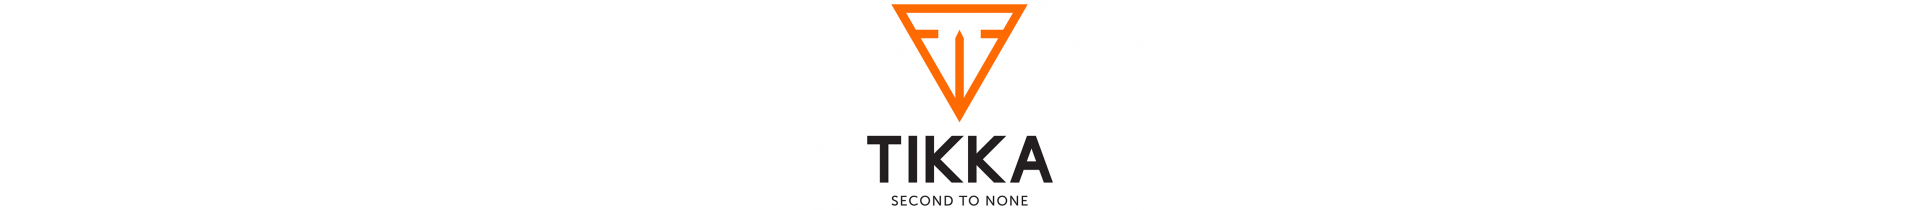 Retrouvez les carabines Tikka sur www.tactirshop.fr